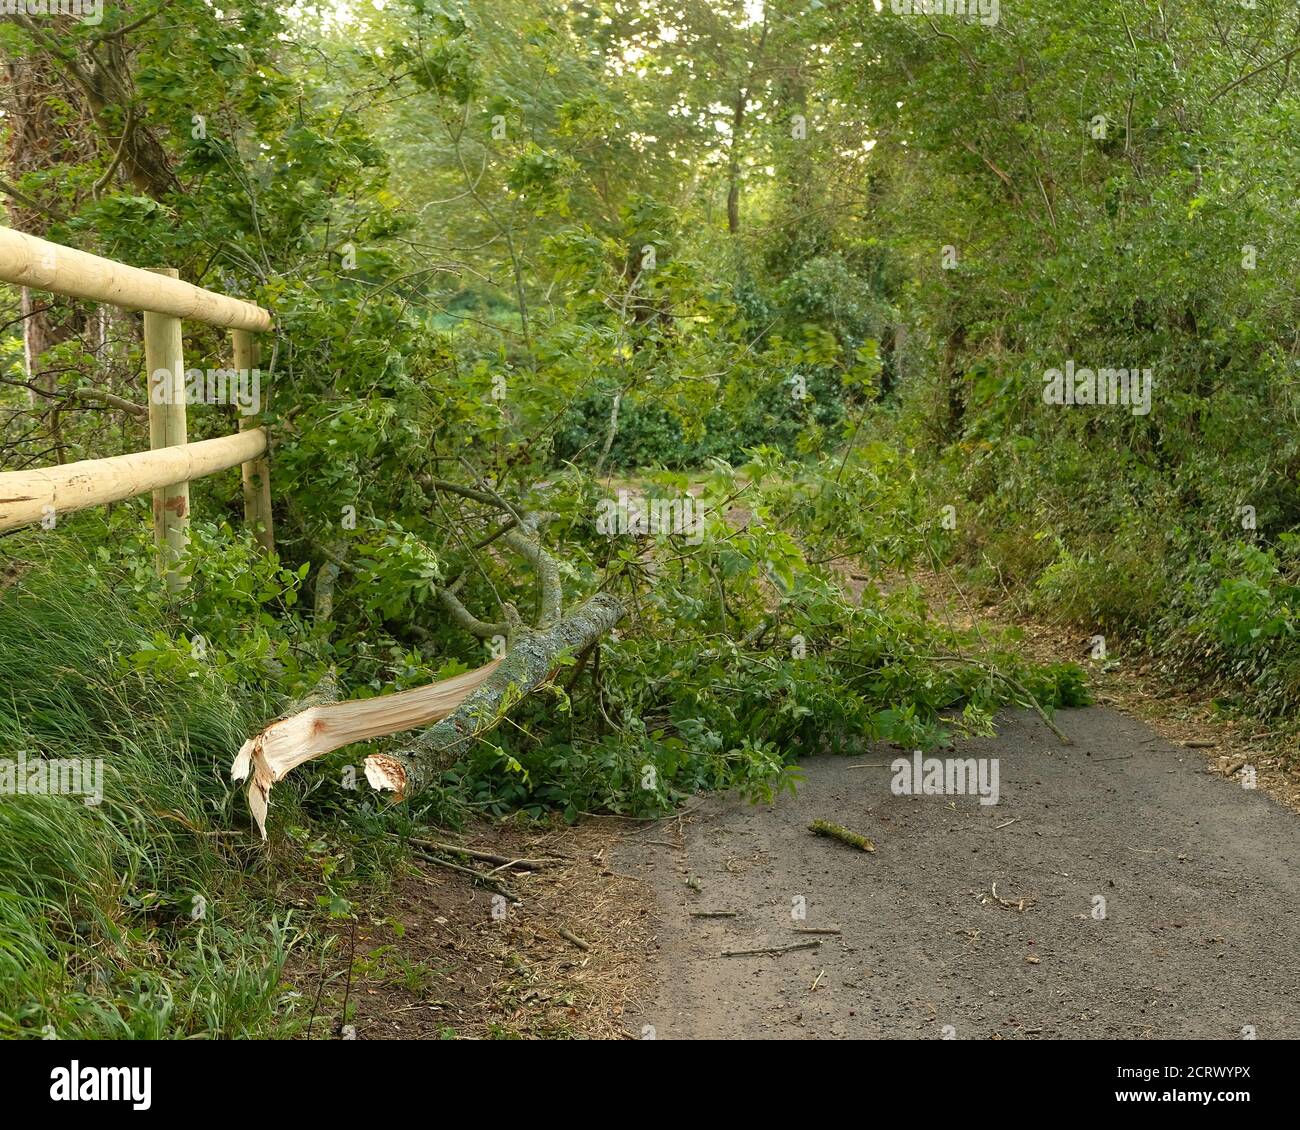 Septembre 2020 - des branches ont explosé des arbres bloquant la voie dans la campagne du Somerset, Angleterre, Royaume-Uni Banque D'Images